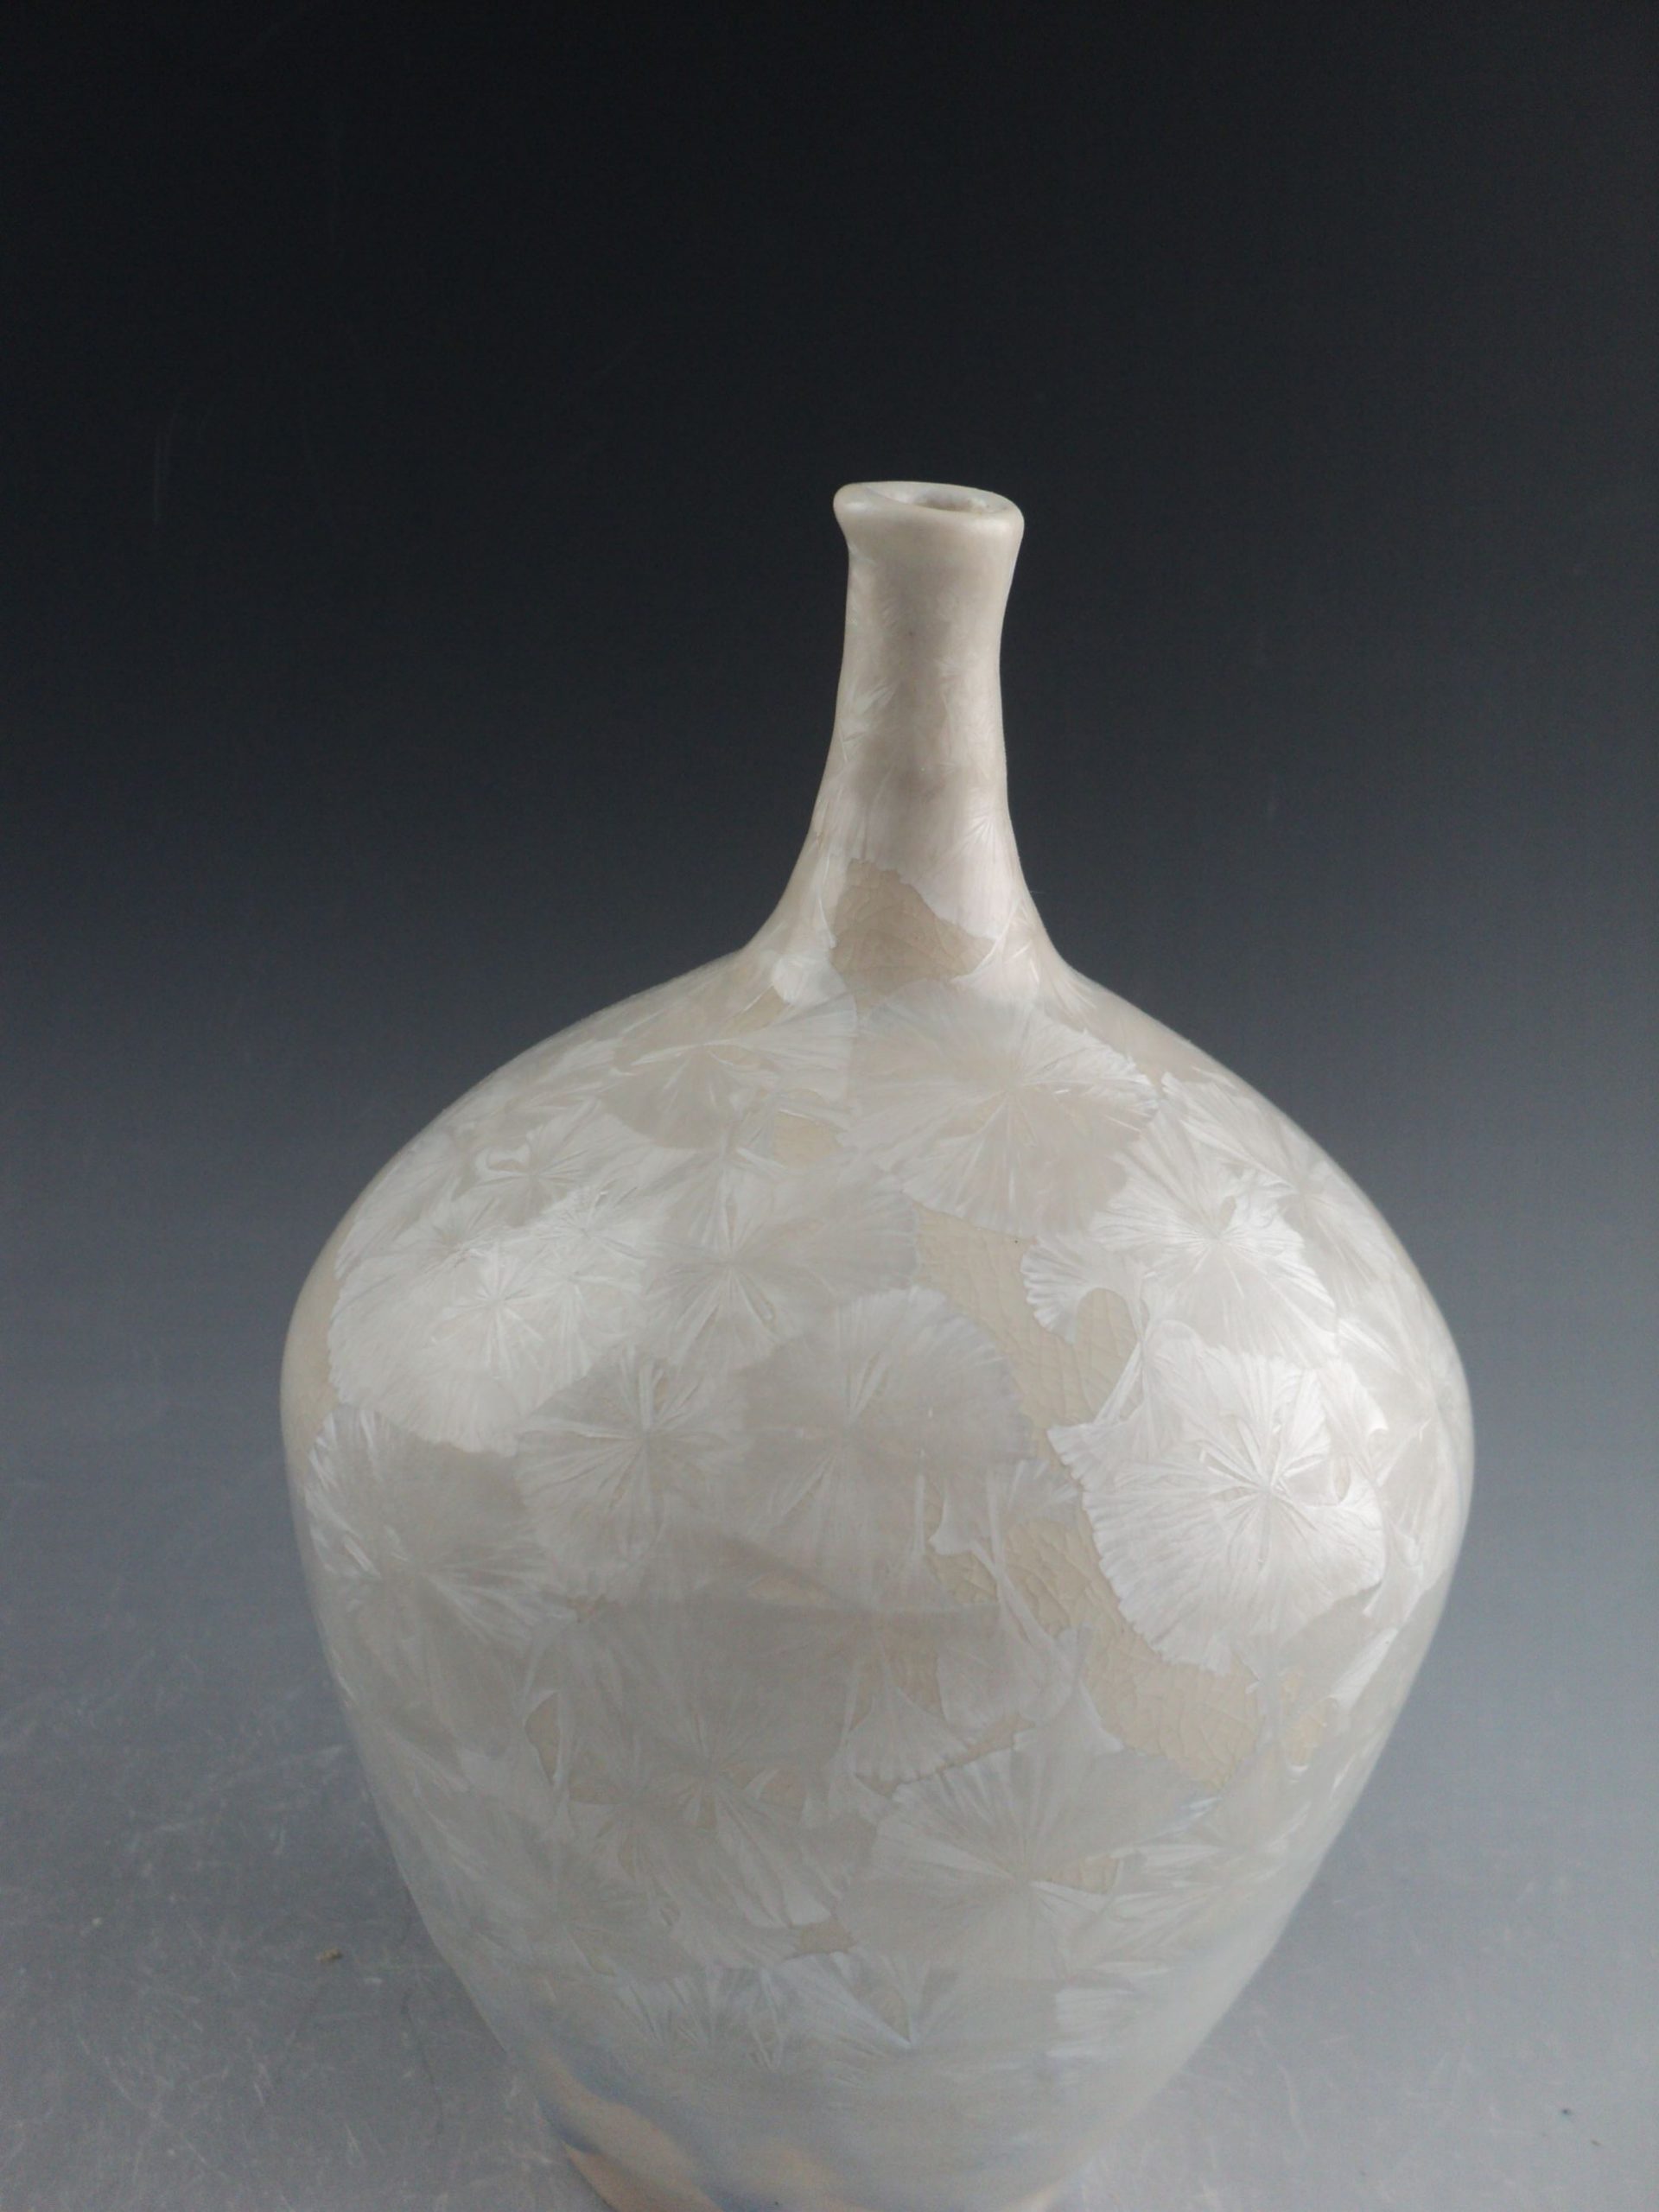 A ceramic vase.